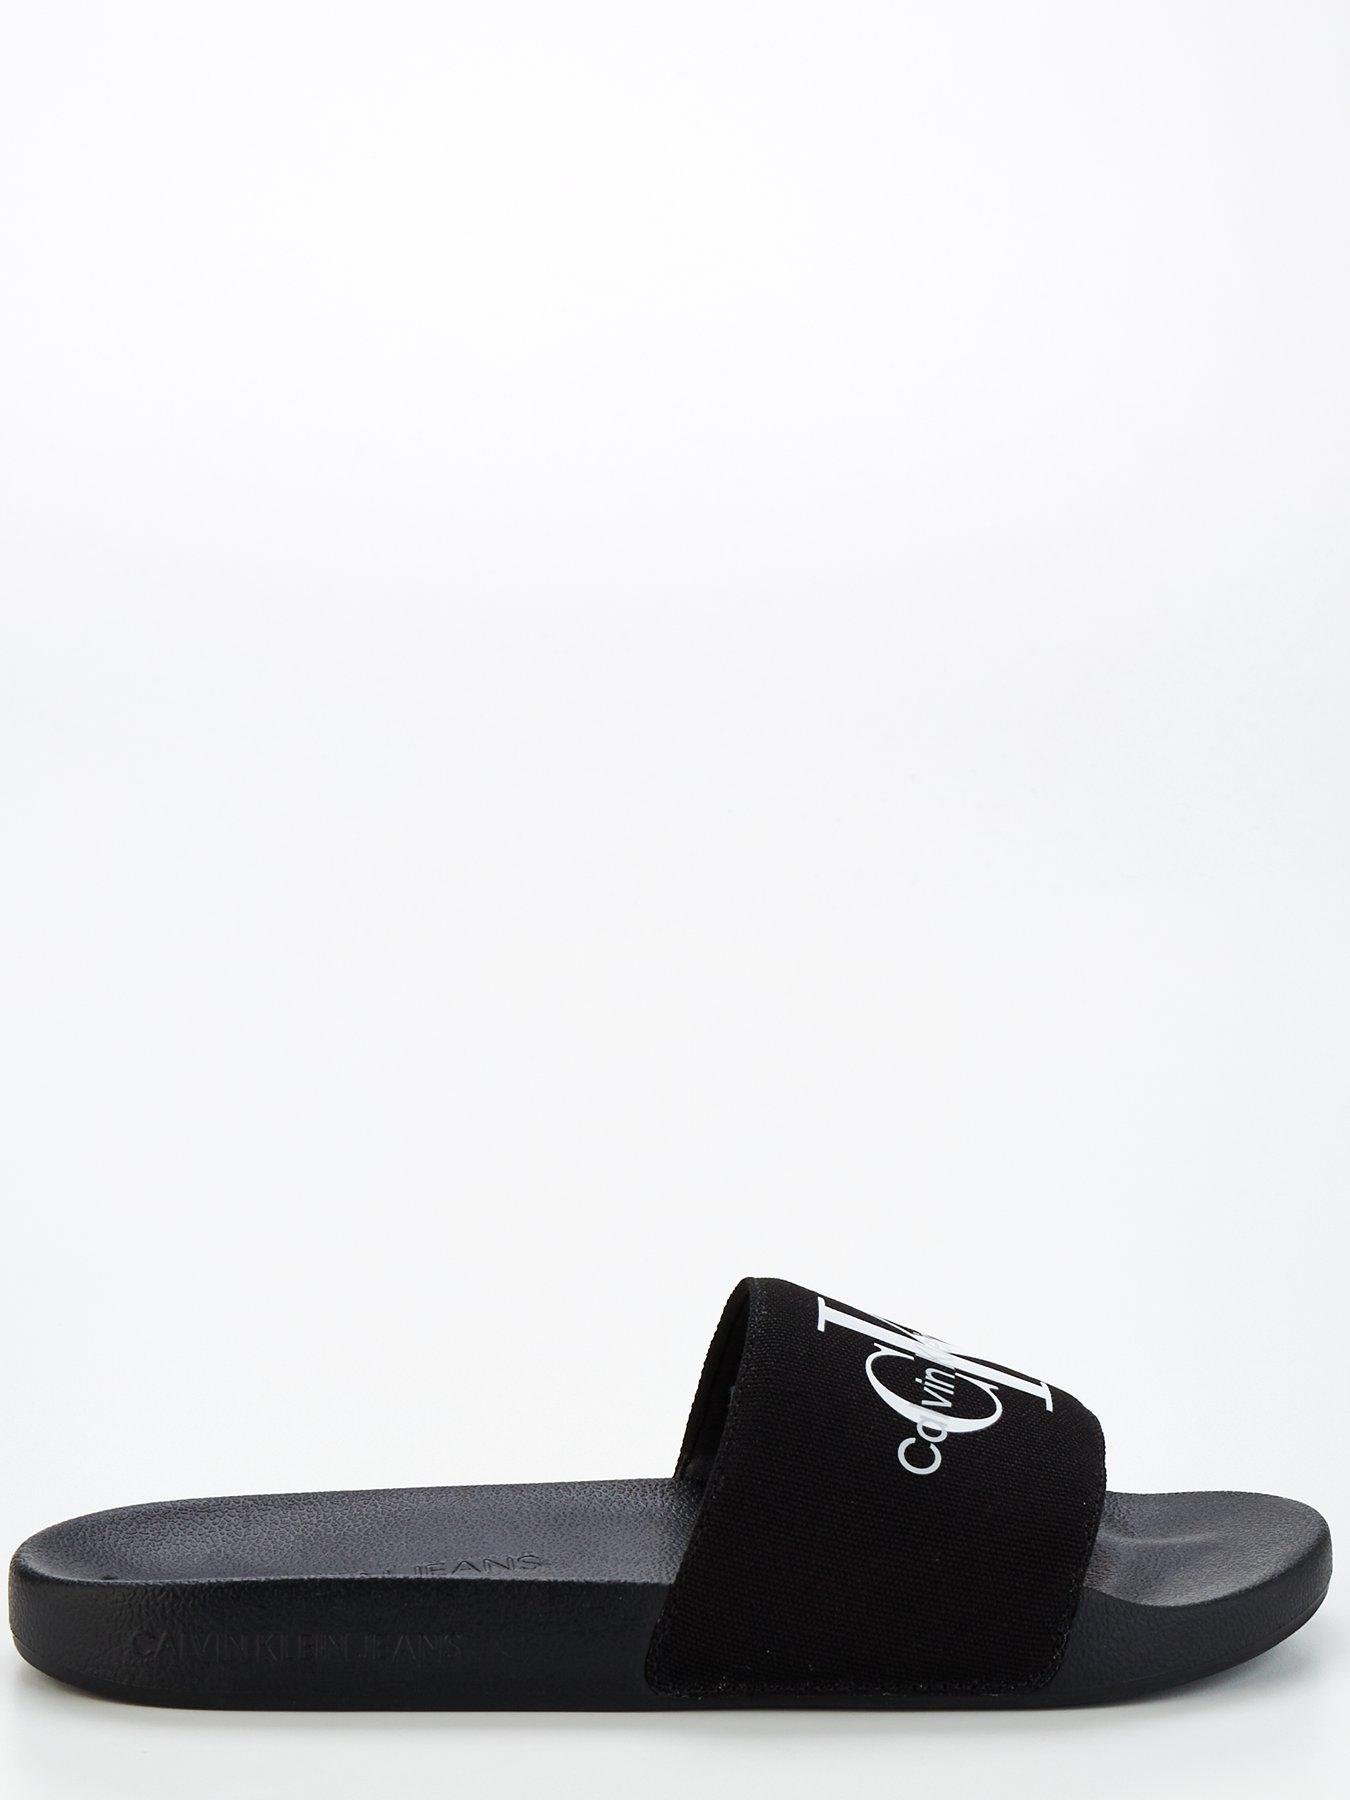 Calvin Klein Jeans Monogram Slide - Black 